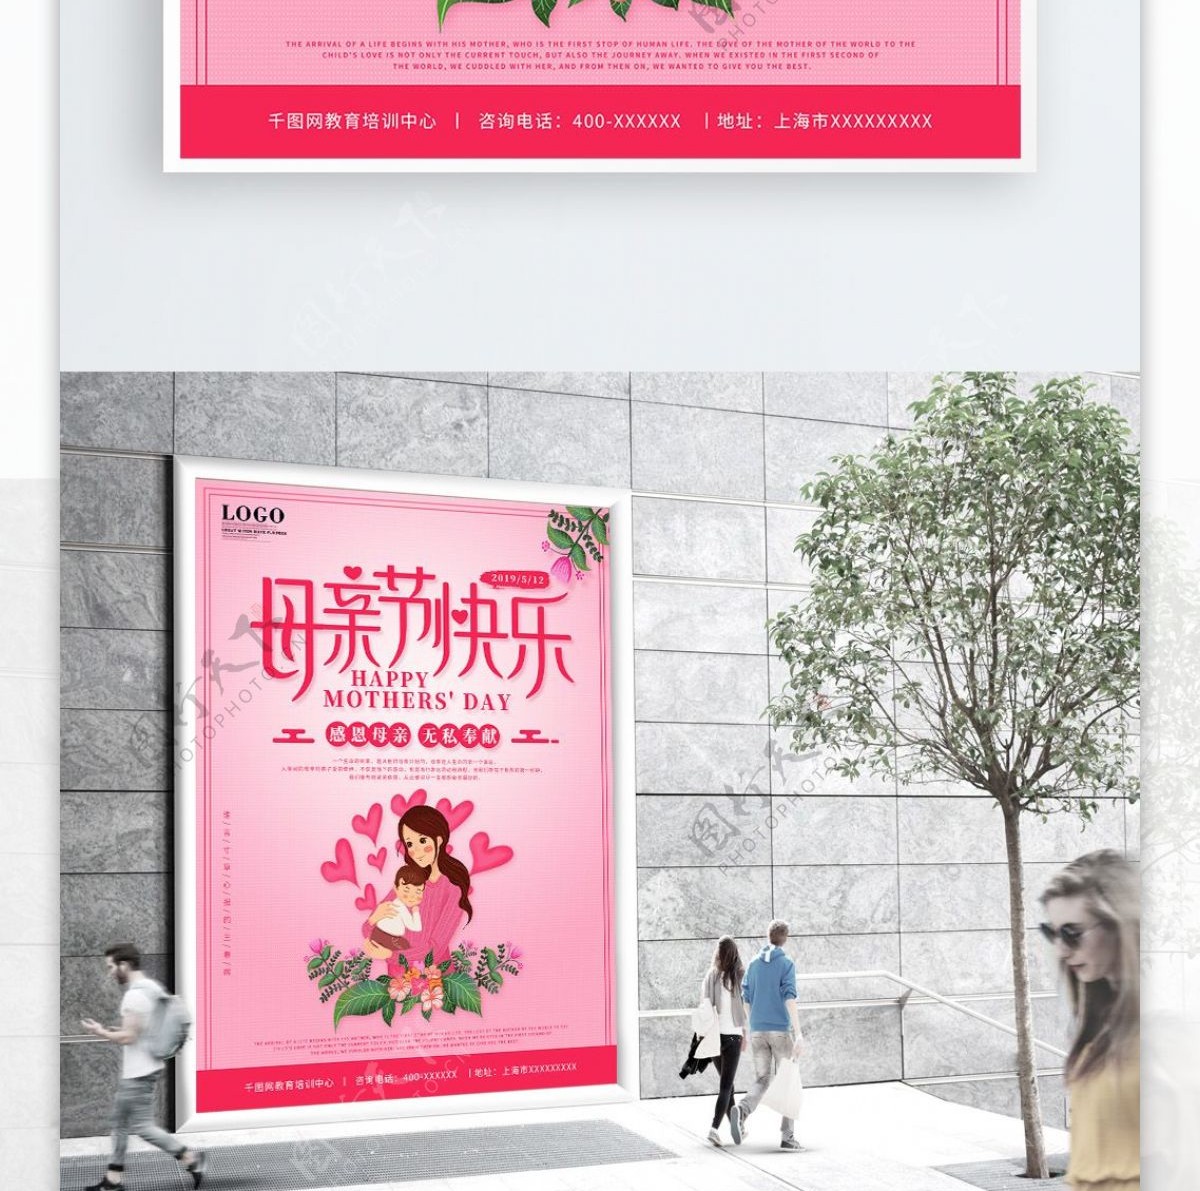 粉色唯美浪漫插画母亲节假日宣传海报